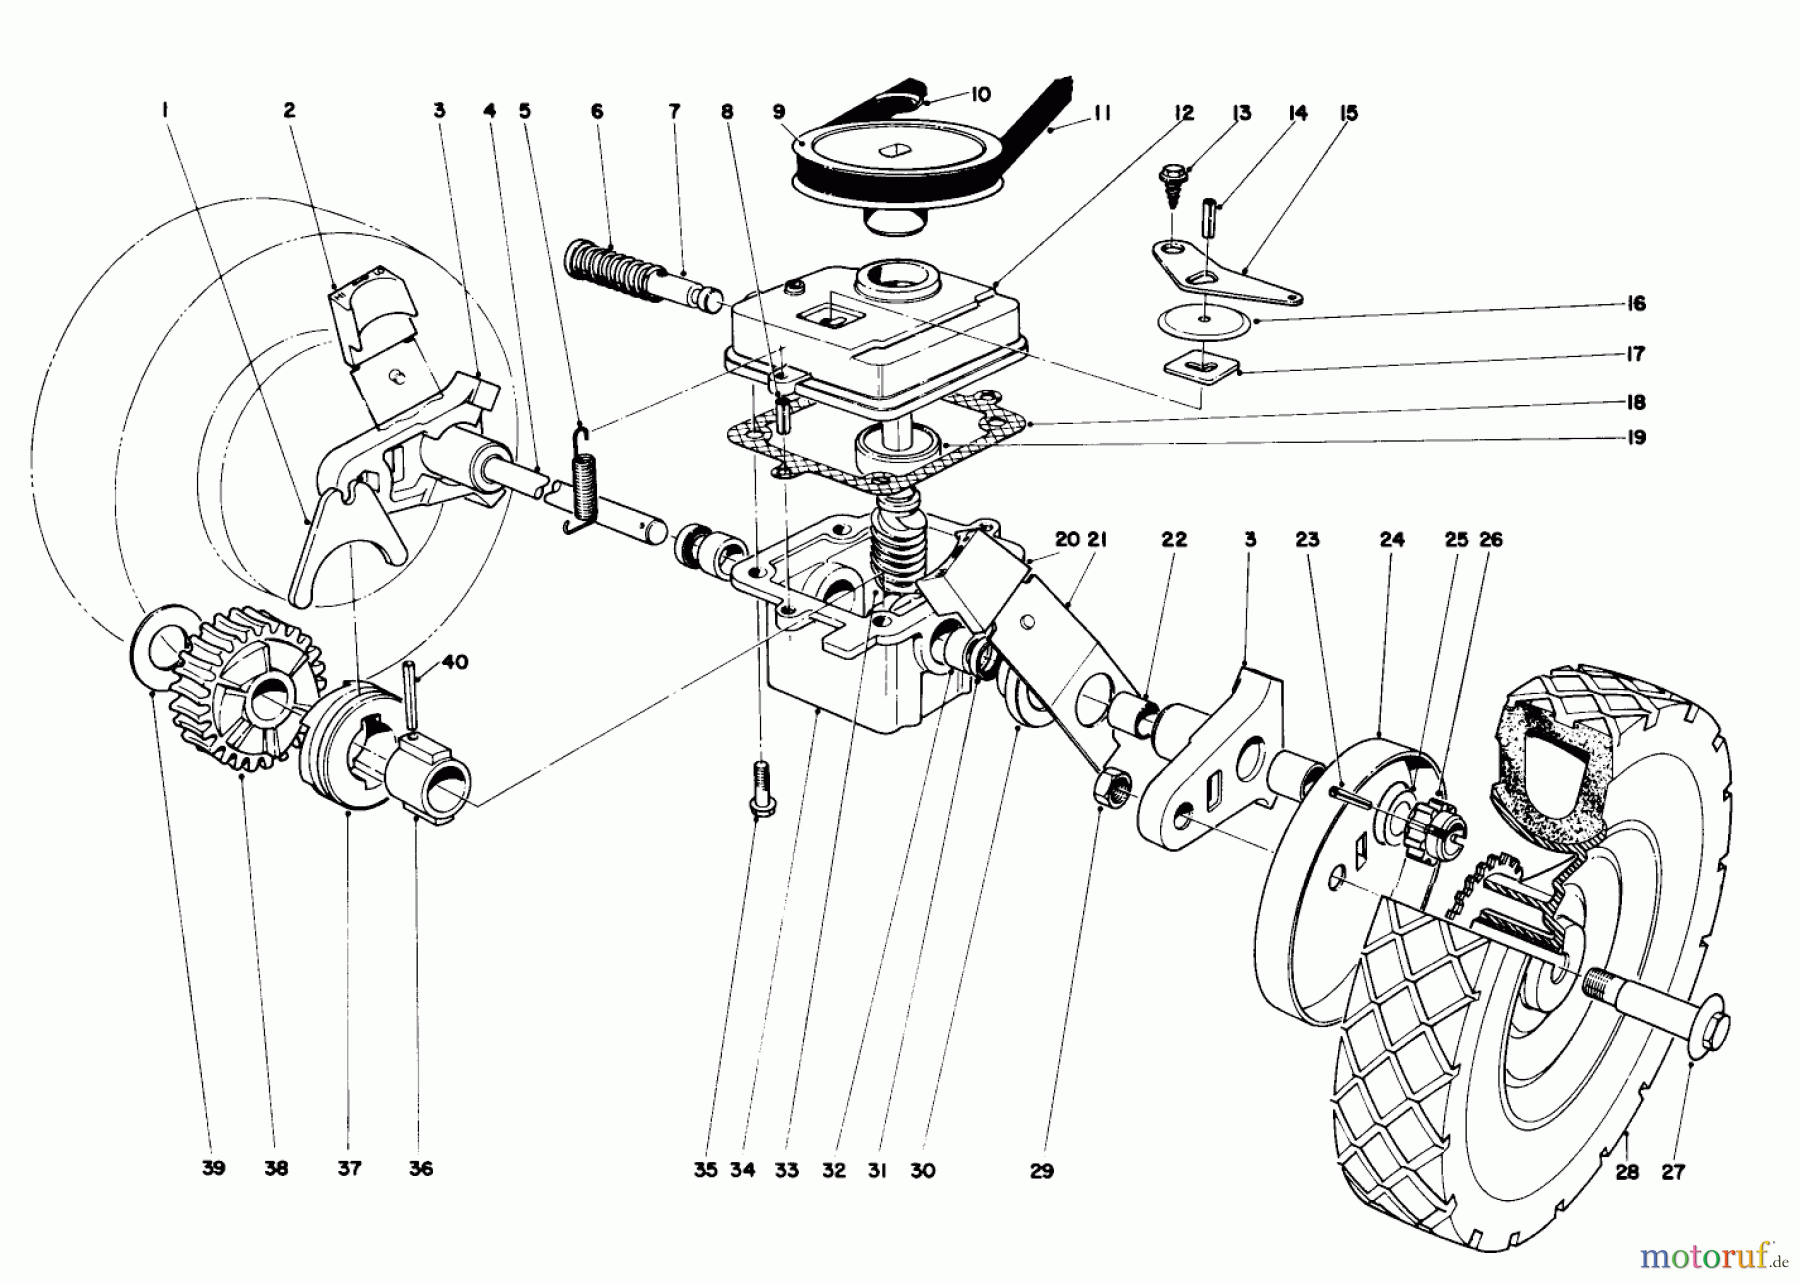  Toro Neu Mowers, Walk-Behind Seite 1 16073 - Toro Whirlwind Lawnmower, 1974 (4000001-4999999) GEAR BOX ASSEMBLY